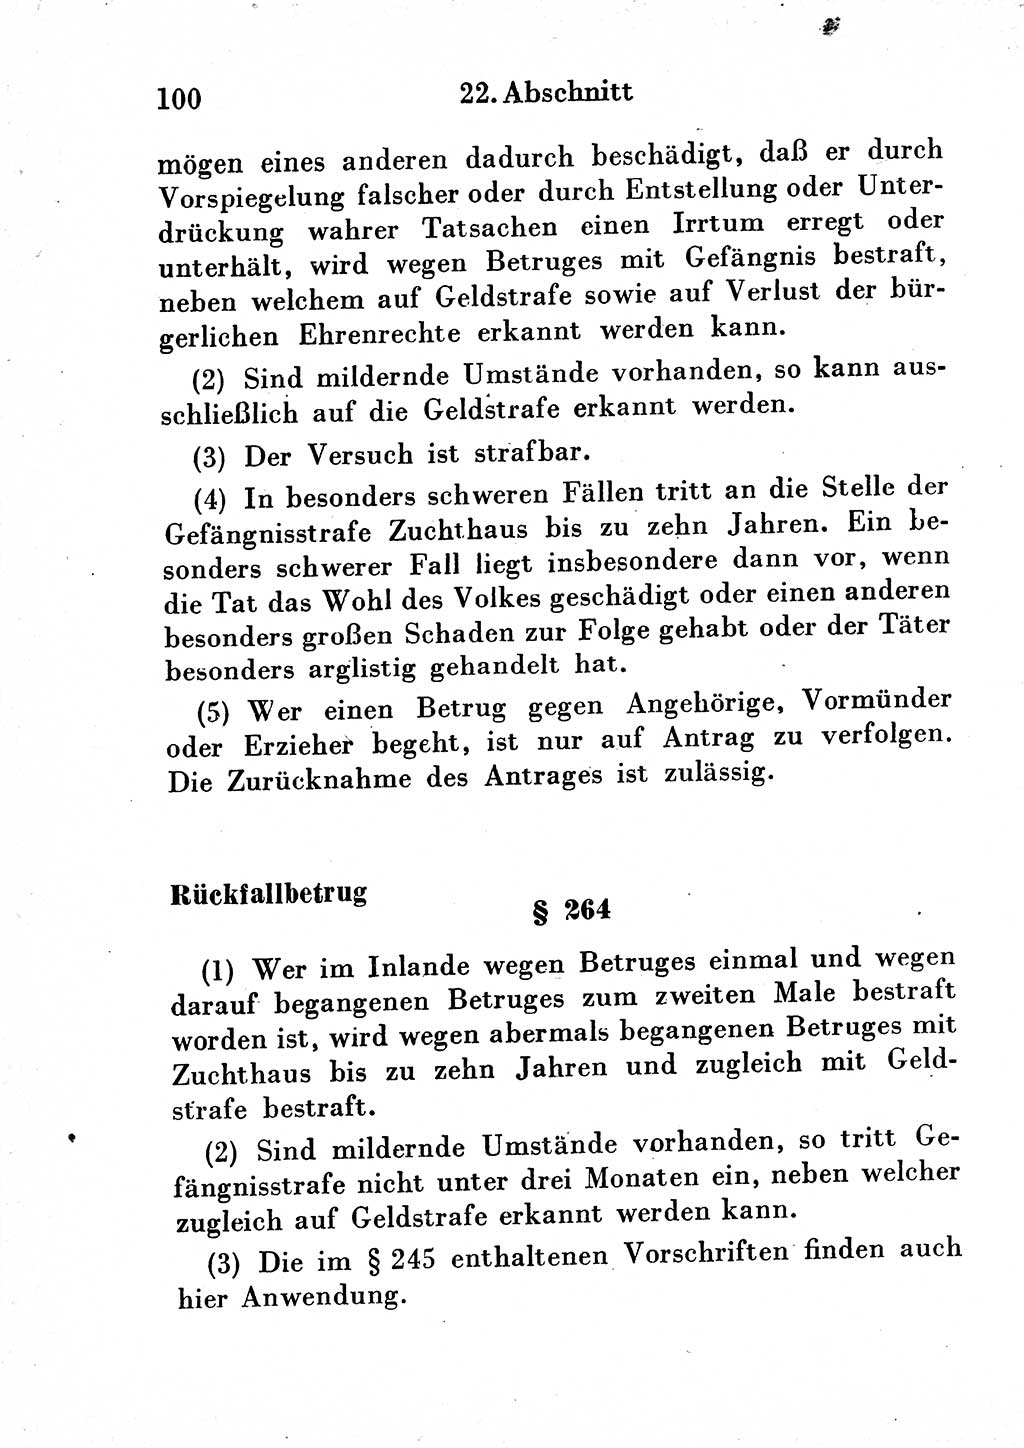 Strafgesetzbuch (StGB) und andere Strafgesetze [Deutsche Demokratische Republik (DDR)] 1954, Seite 100 (StGB Strafges. DDR 1954, S. 100)